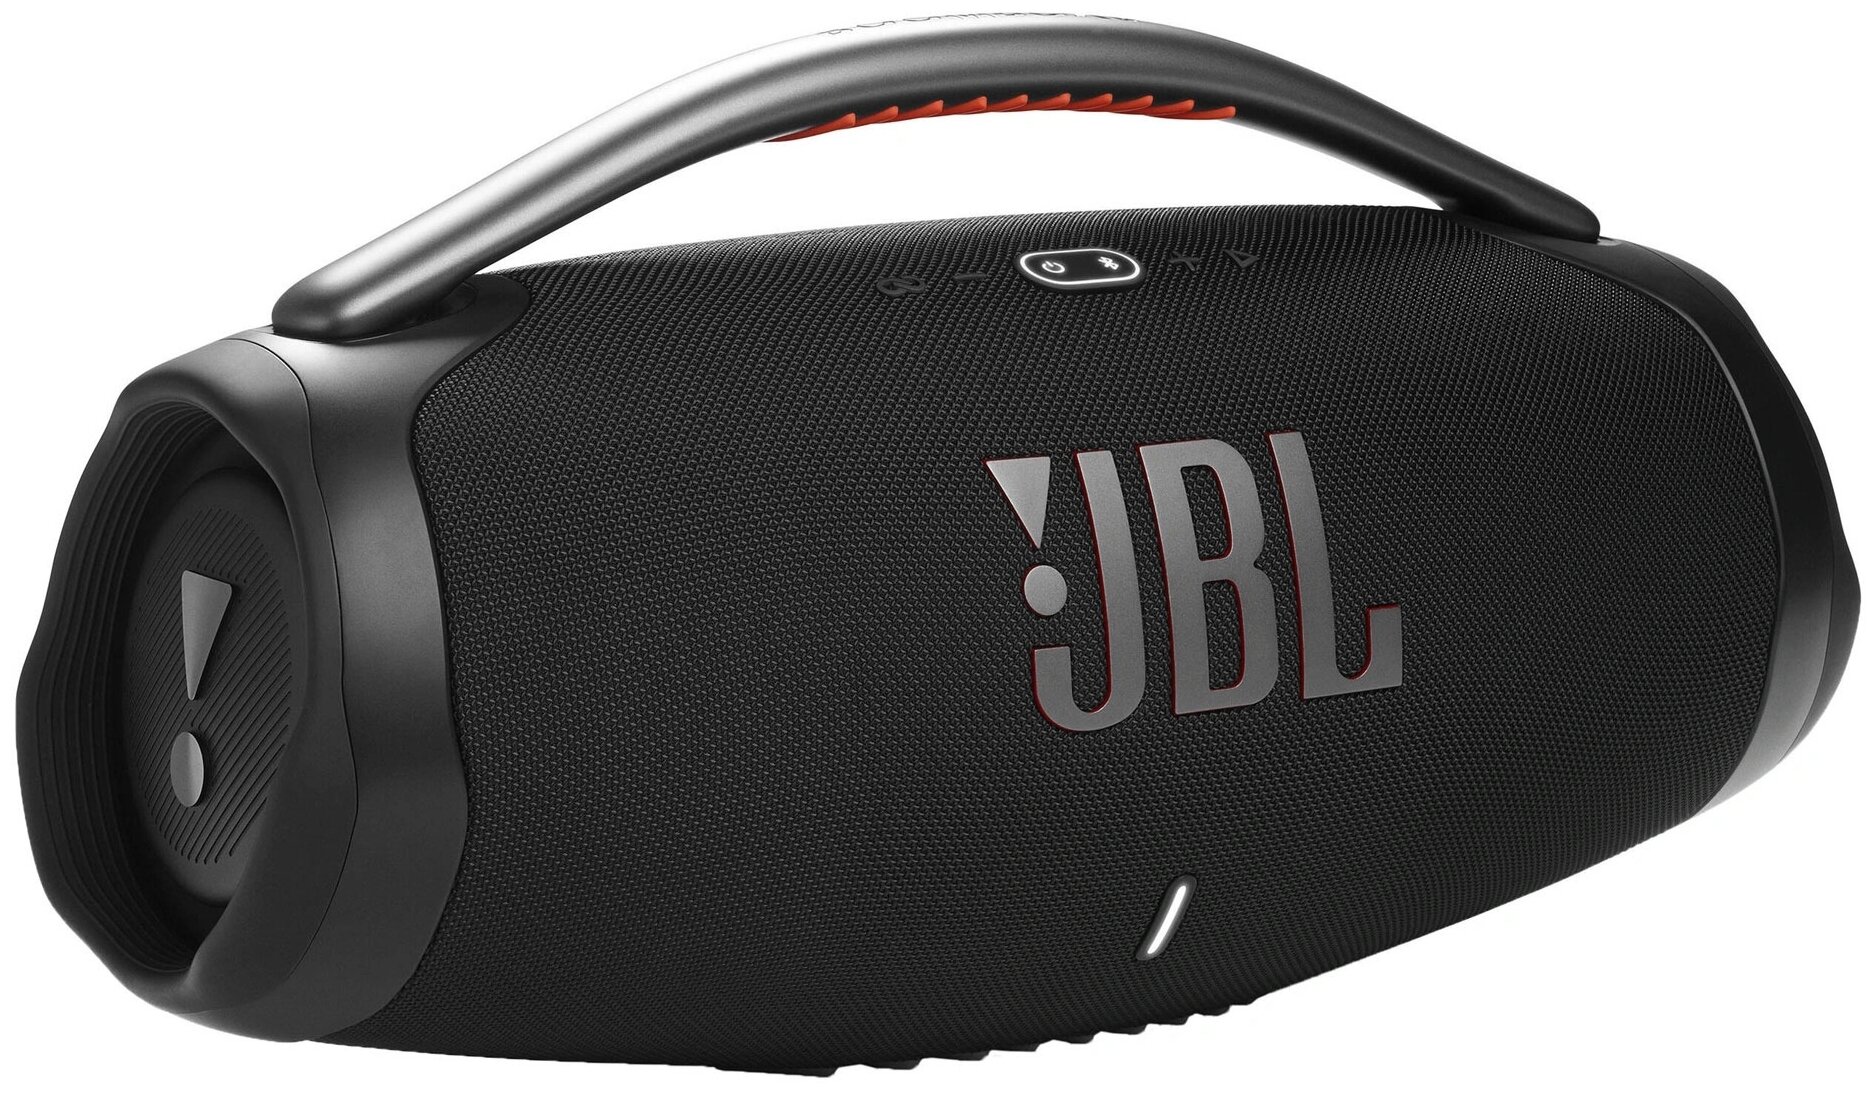 JBLBOOMBOX3BLKEP JBL Boombox 3, Black